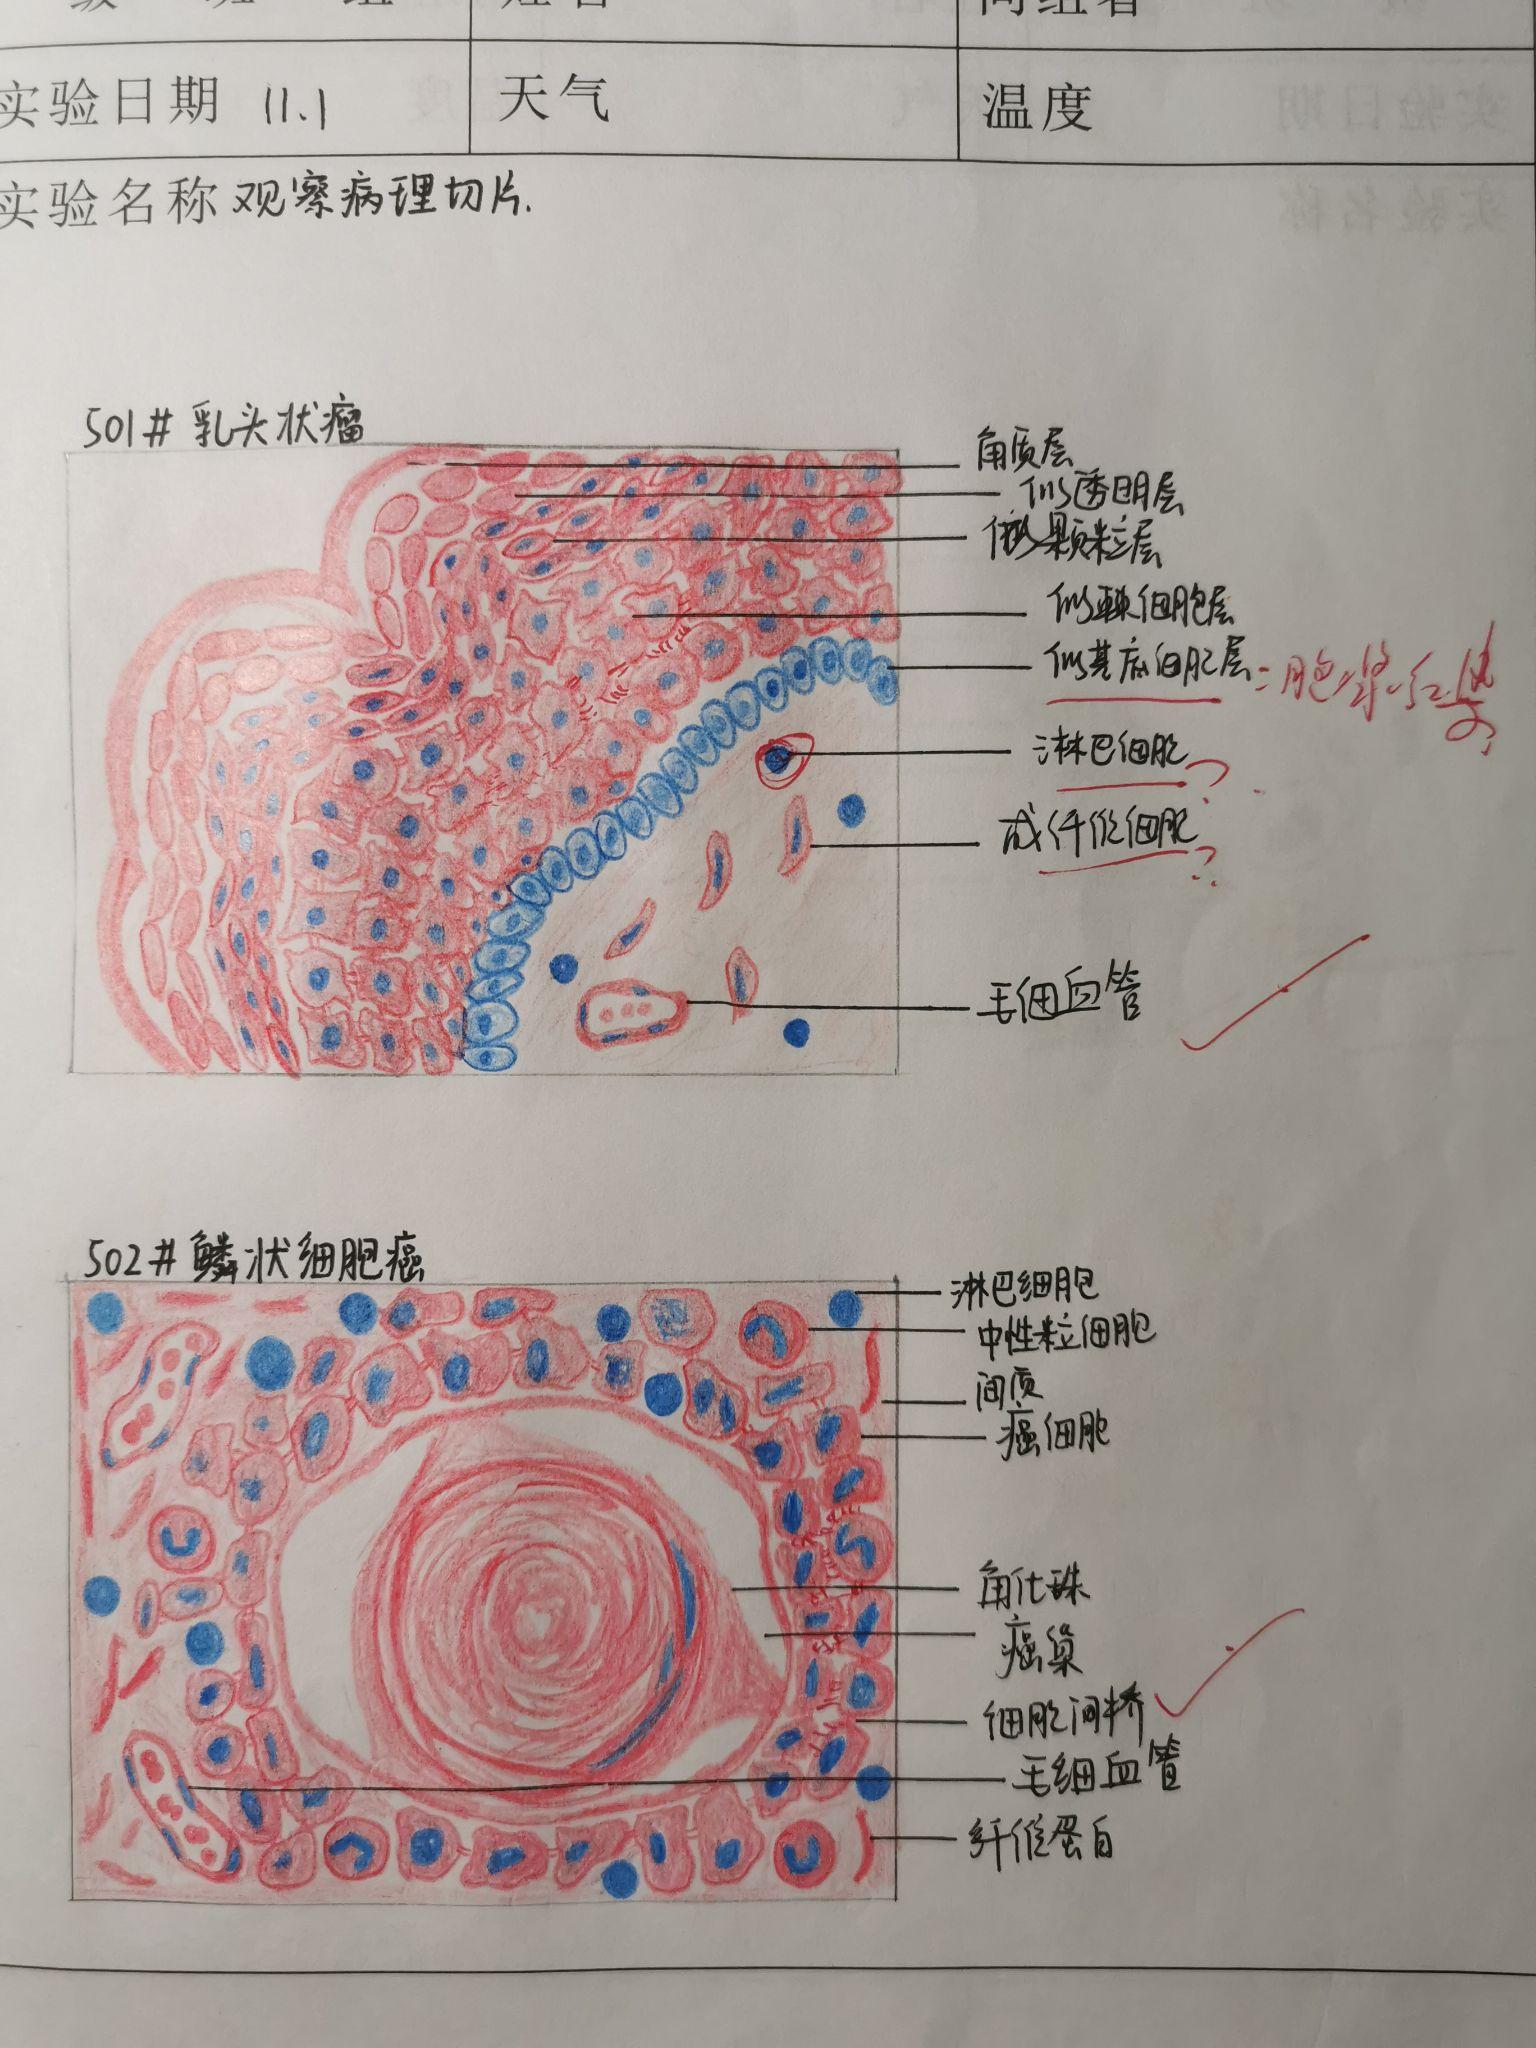 脊髓红蓝铅笔手绘图图片